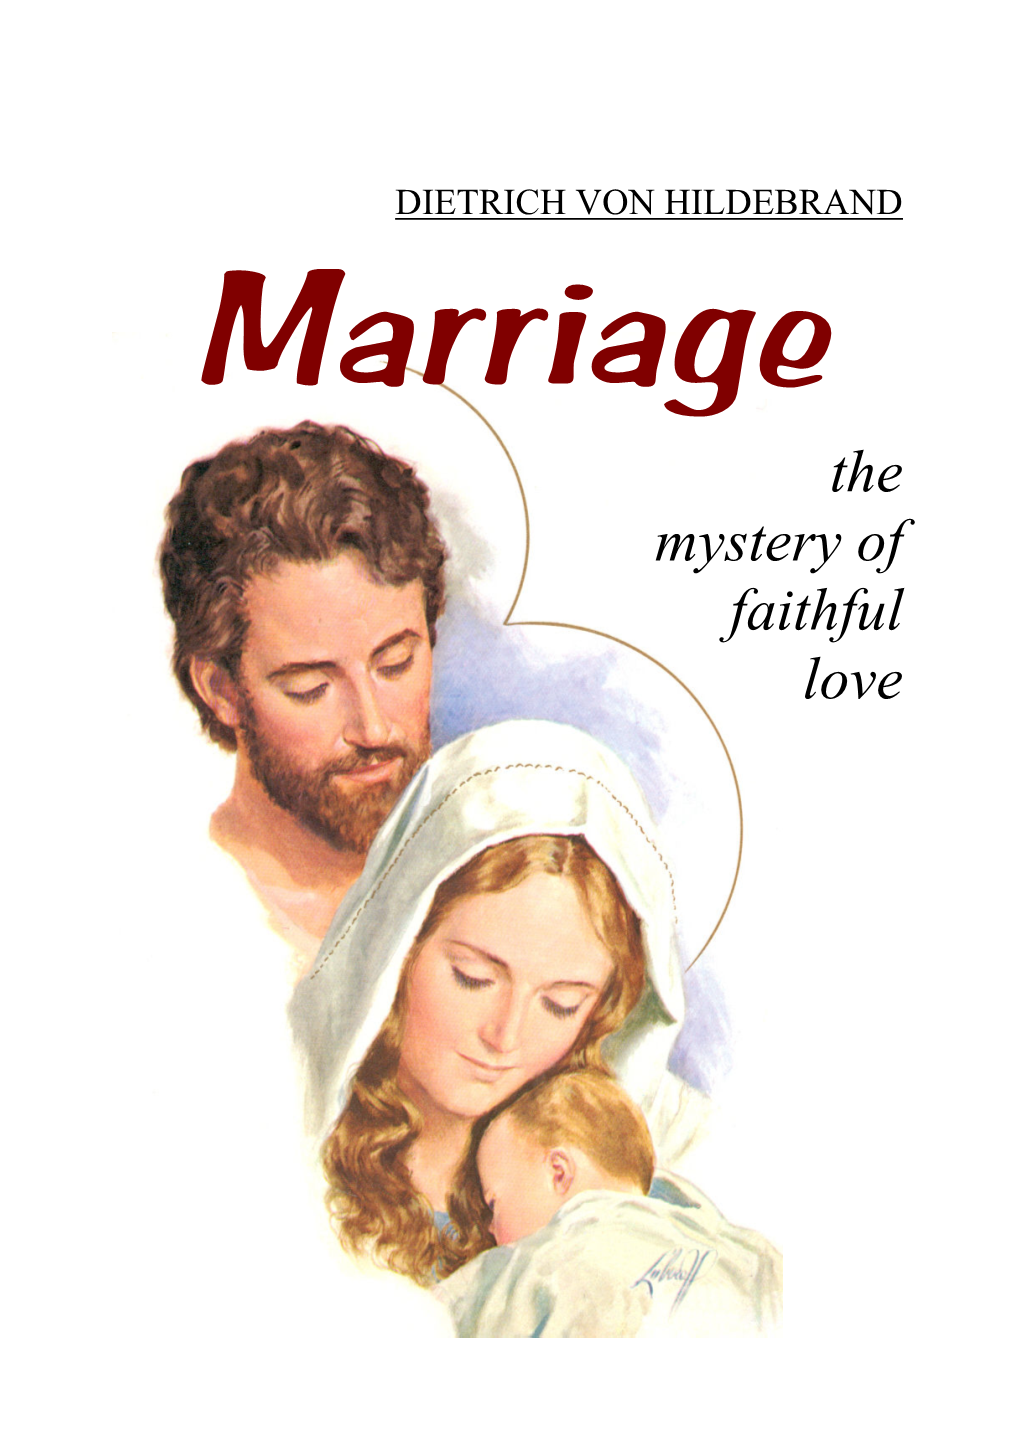 DIETRICH VON HILDEBRAND Marriage the Mystery of Faithful Love